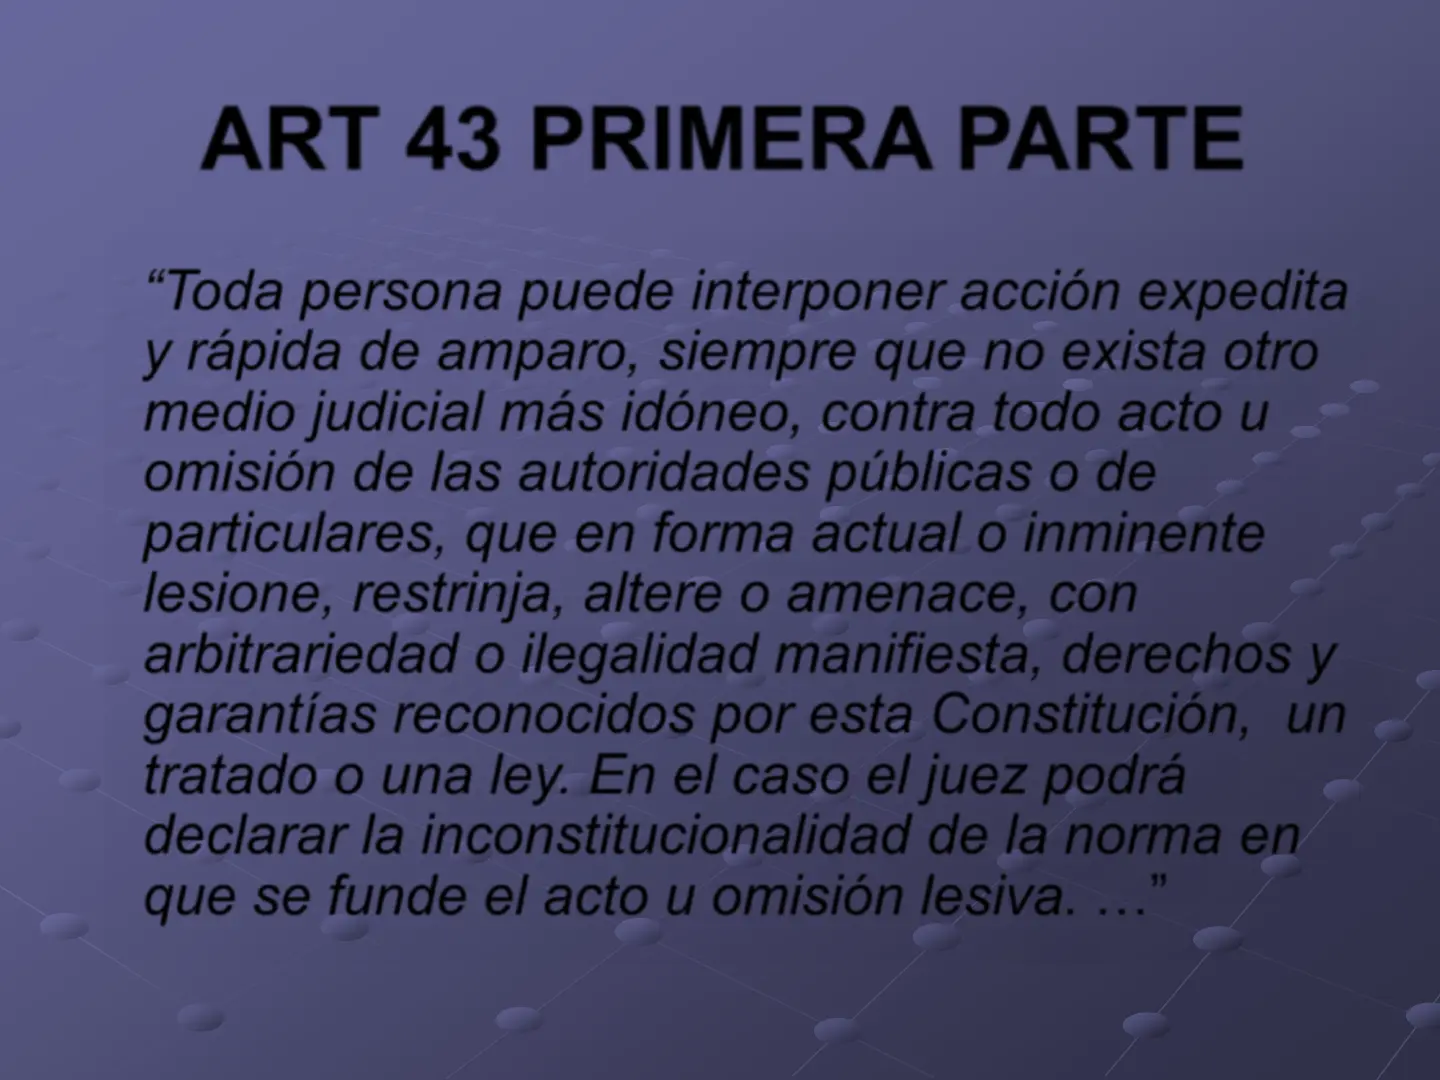 articulo 43 de la constitucion nacional resumen - Qué es el habeas data Art 43